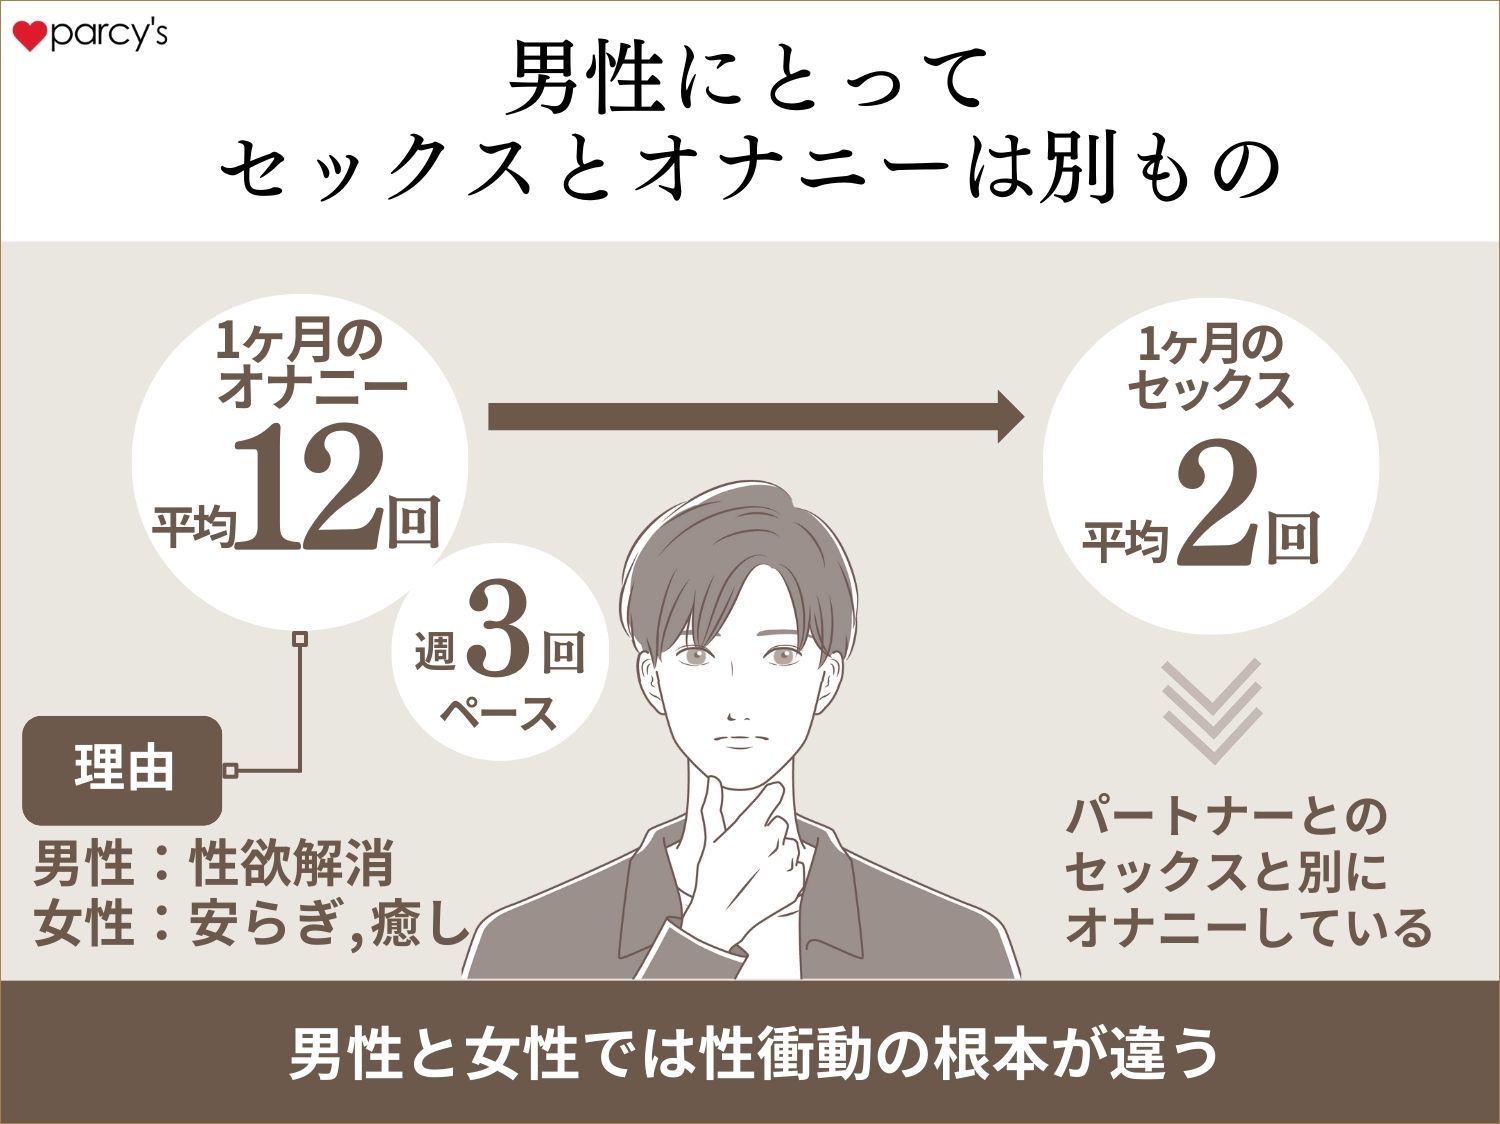 日本人男性の１ヶ月平均射精回数は約12回。週に3回のペース